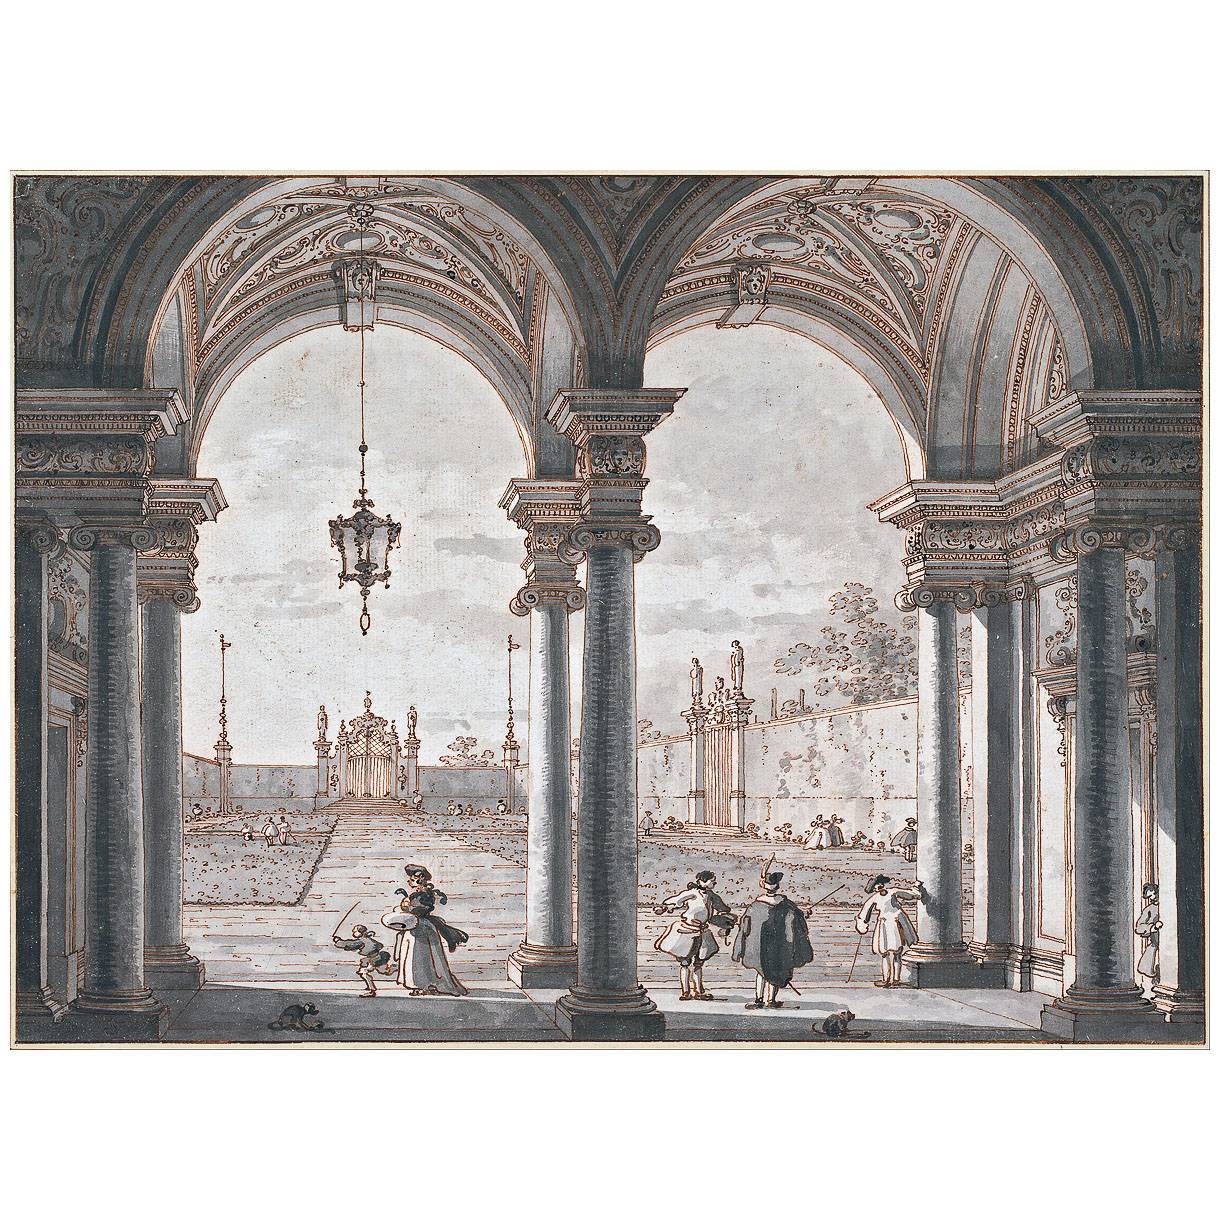 Canaletto. Capriccio del colonnato barocco. 1760-1768. Albertina Wien